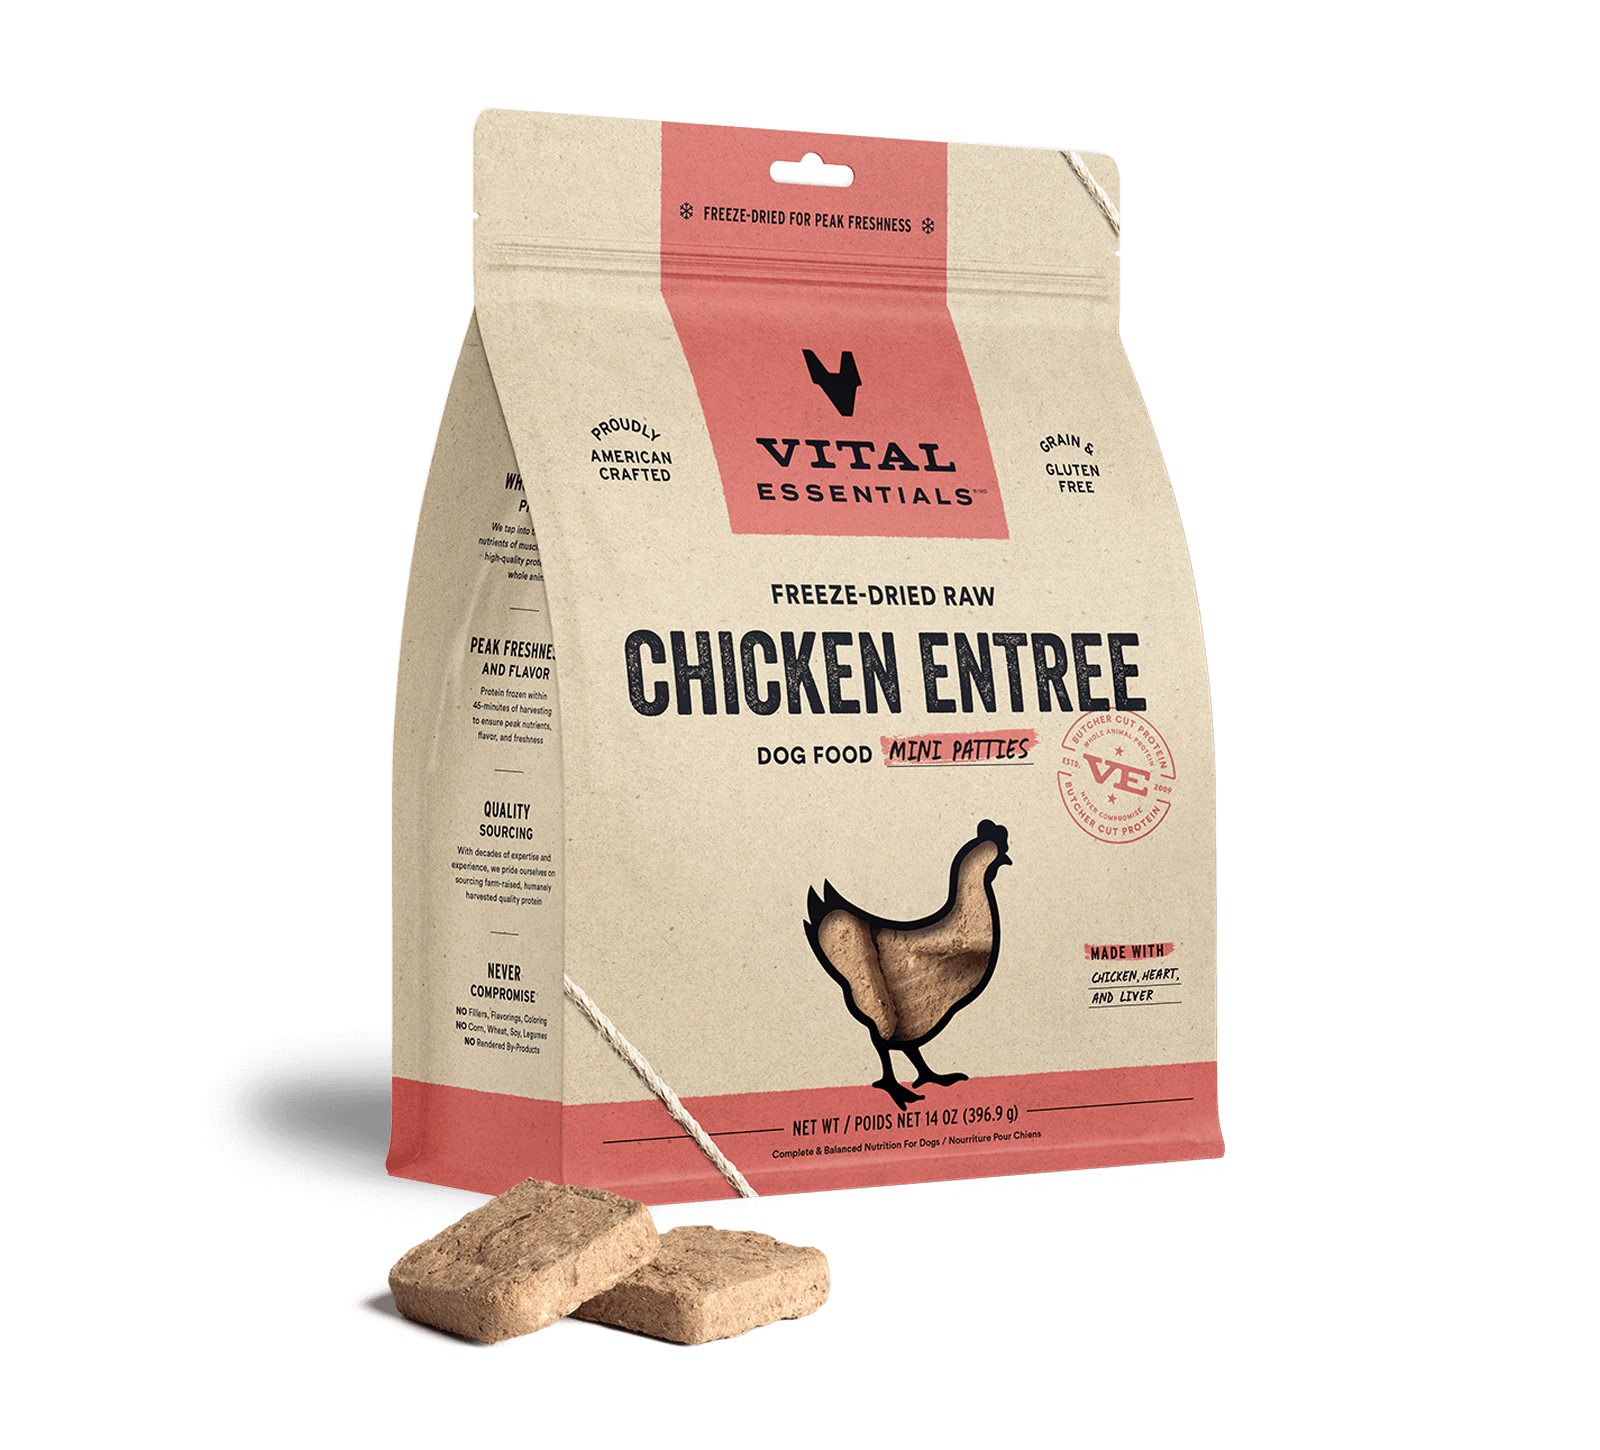 Vital Essentials Freeze-Dried Raw Chicken Entree Dog Food Mini Patties, 14 oz - Treats